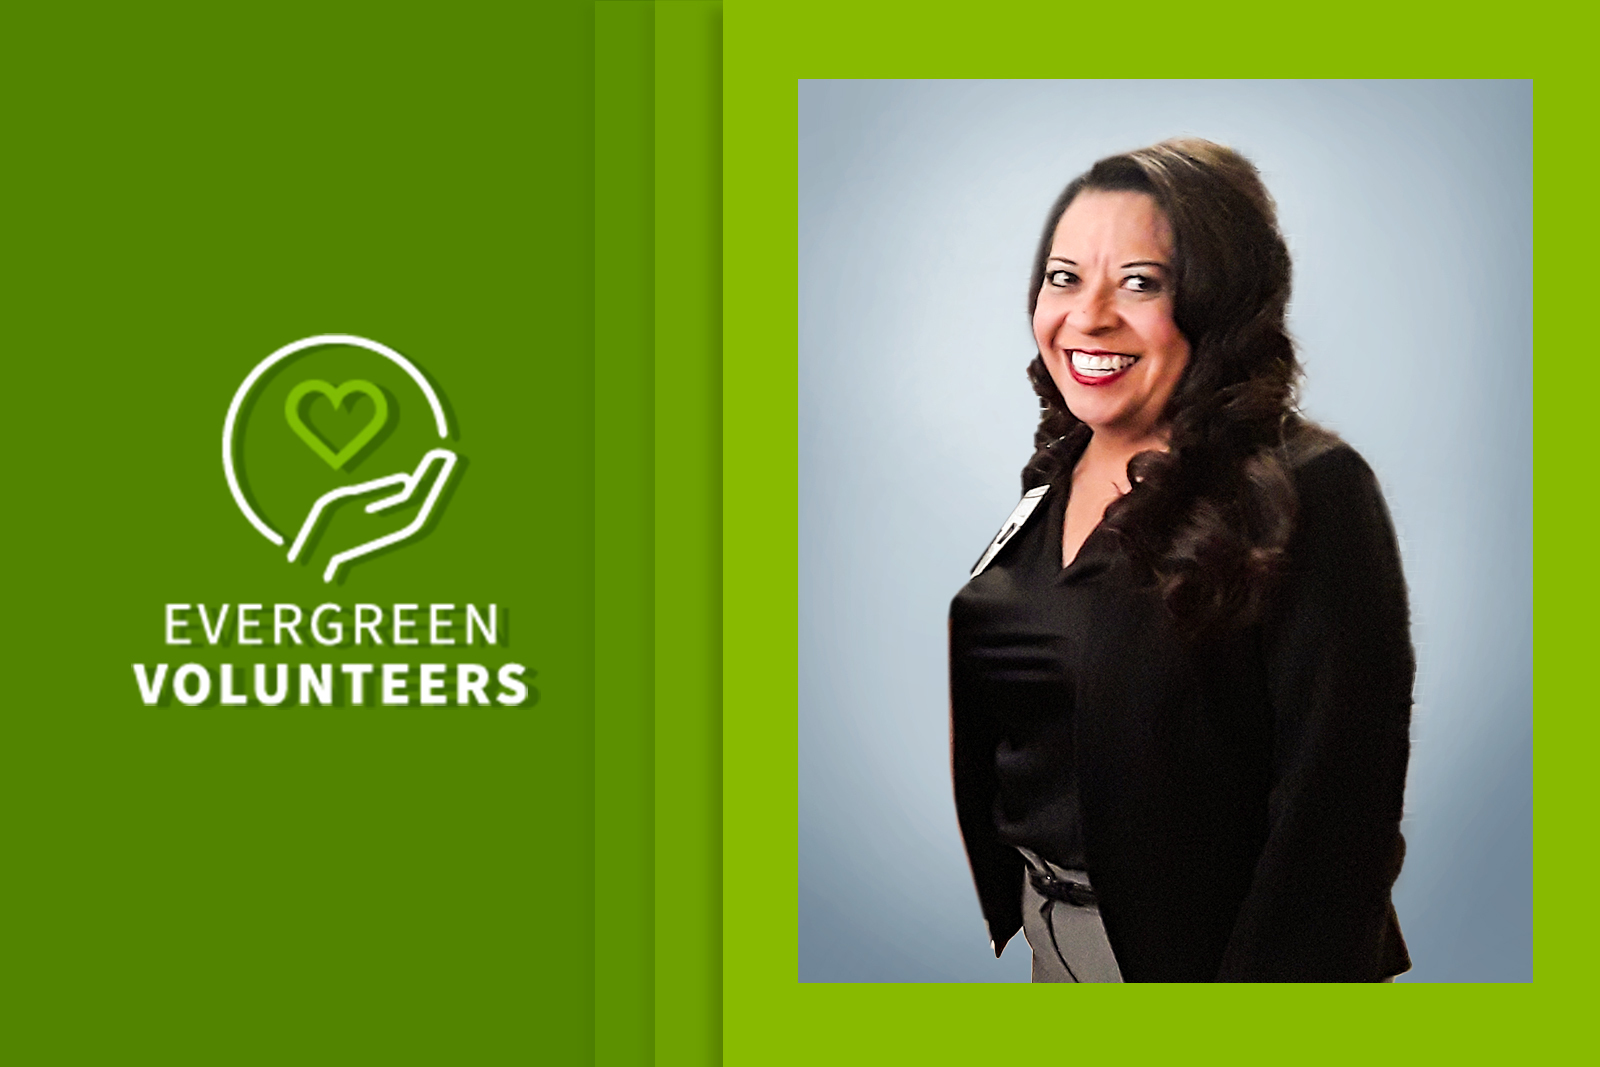 Photo of Cristi Ramirez with Evergreen Volunteers logo